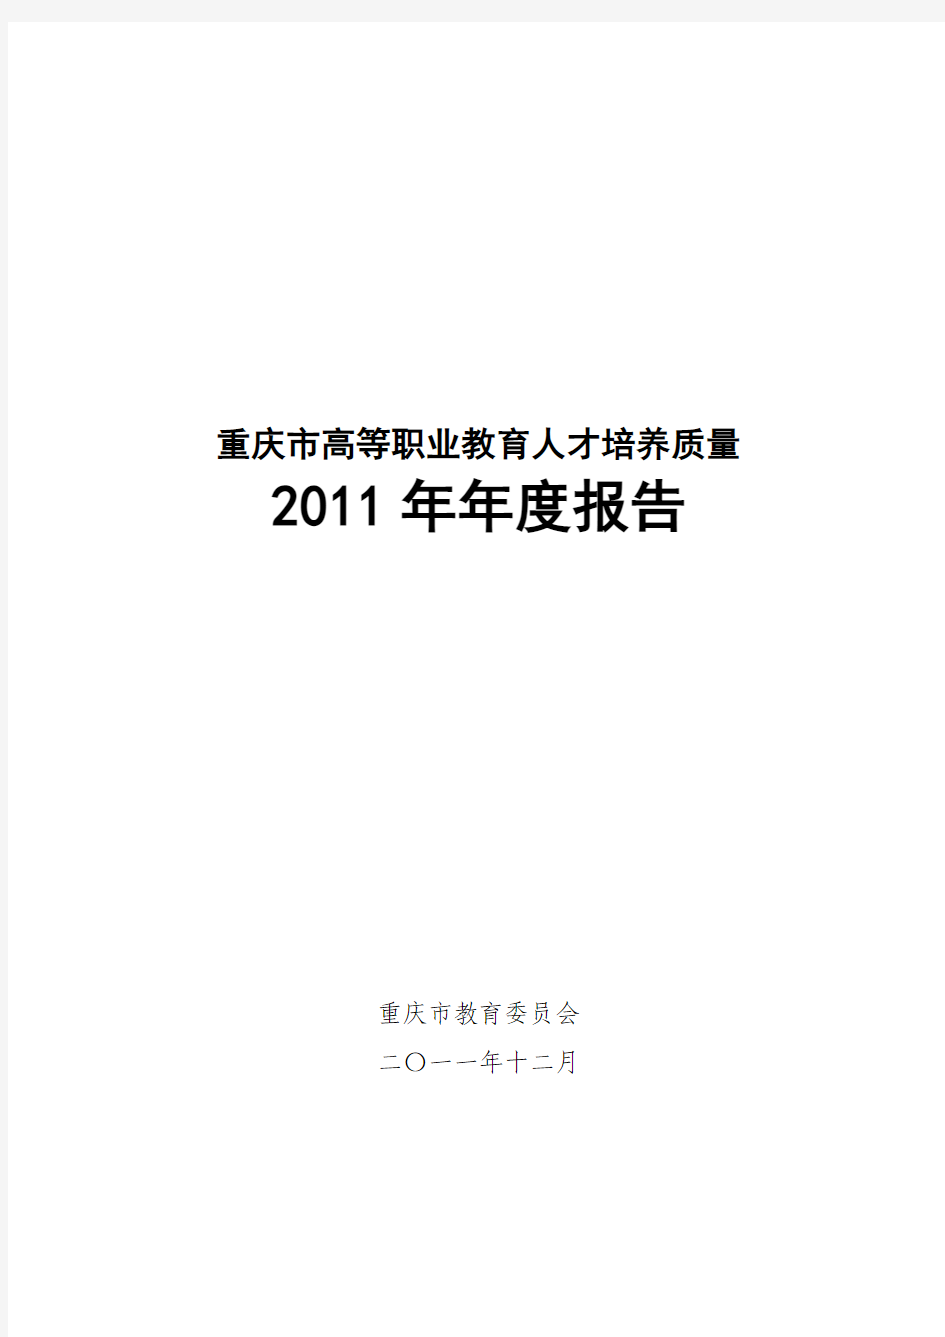 重庆市高等职业教育人才培养质量 2011年年度报告